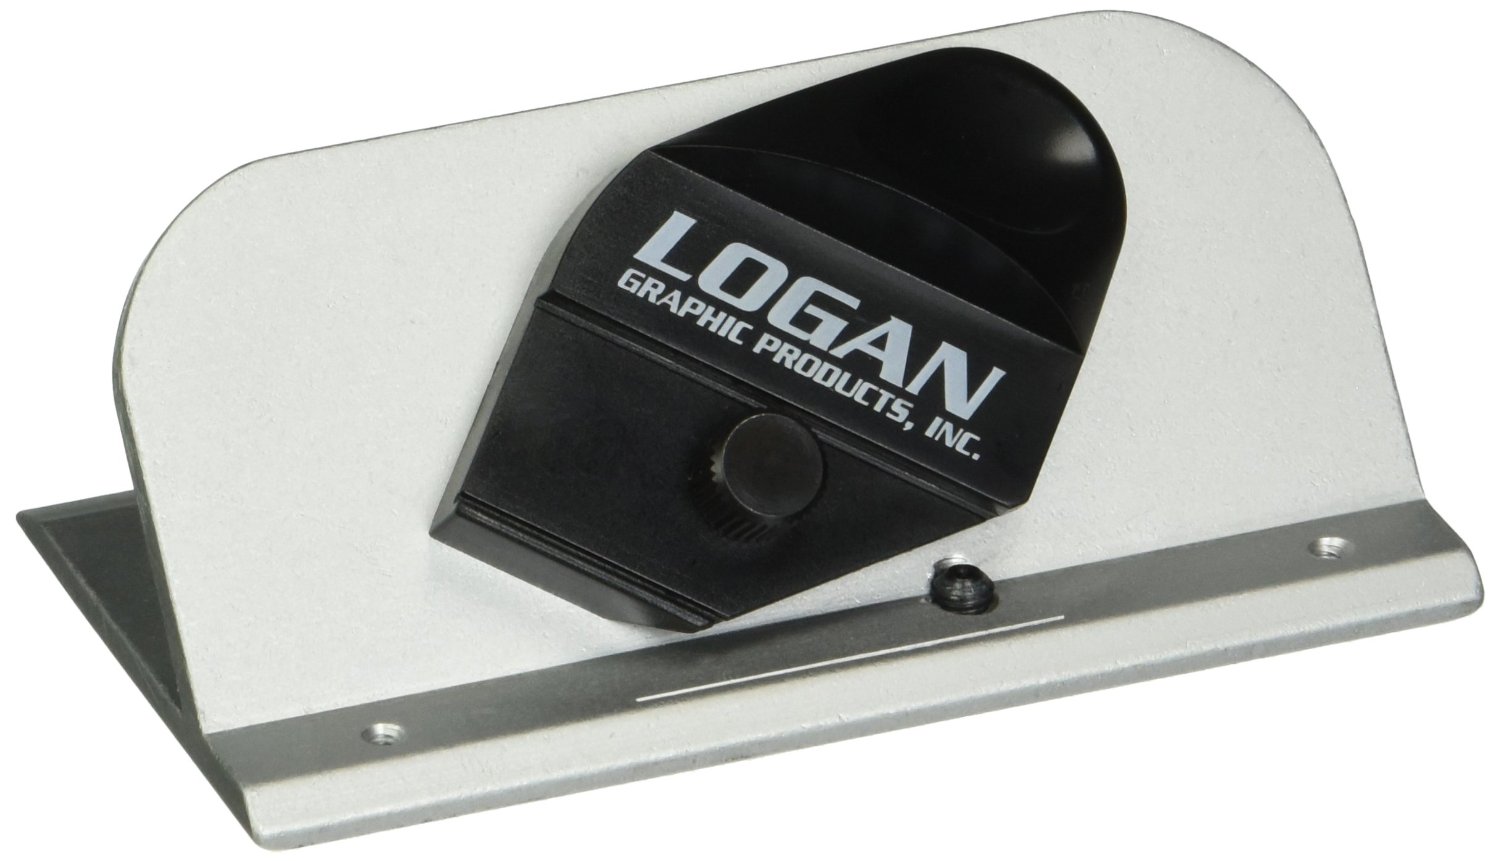 Logan 2000 Deluxe Hand-Held Bevel Mat Cutter, 5 Blades - Logan mat cutter includes a retractable blade holder